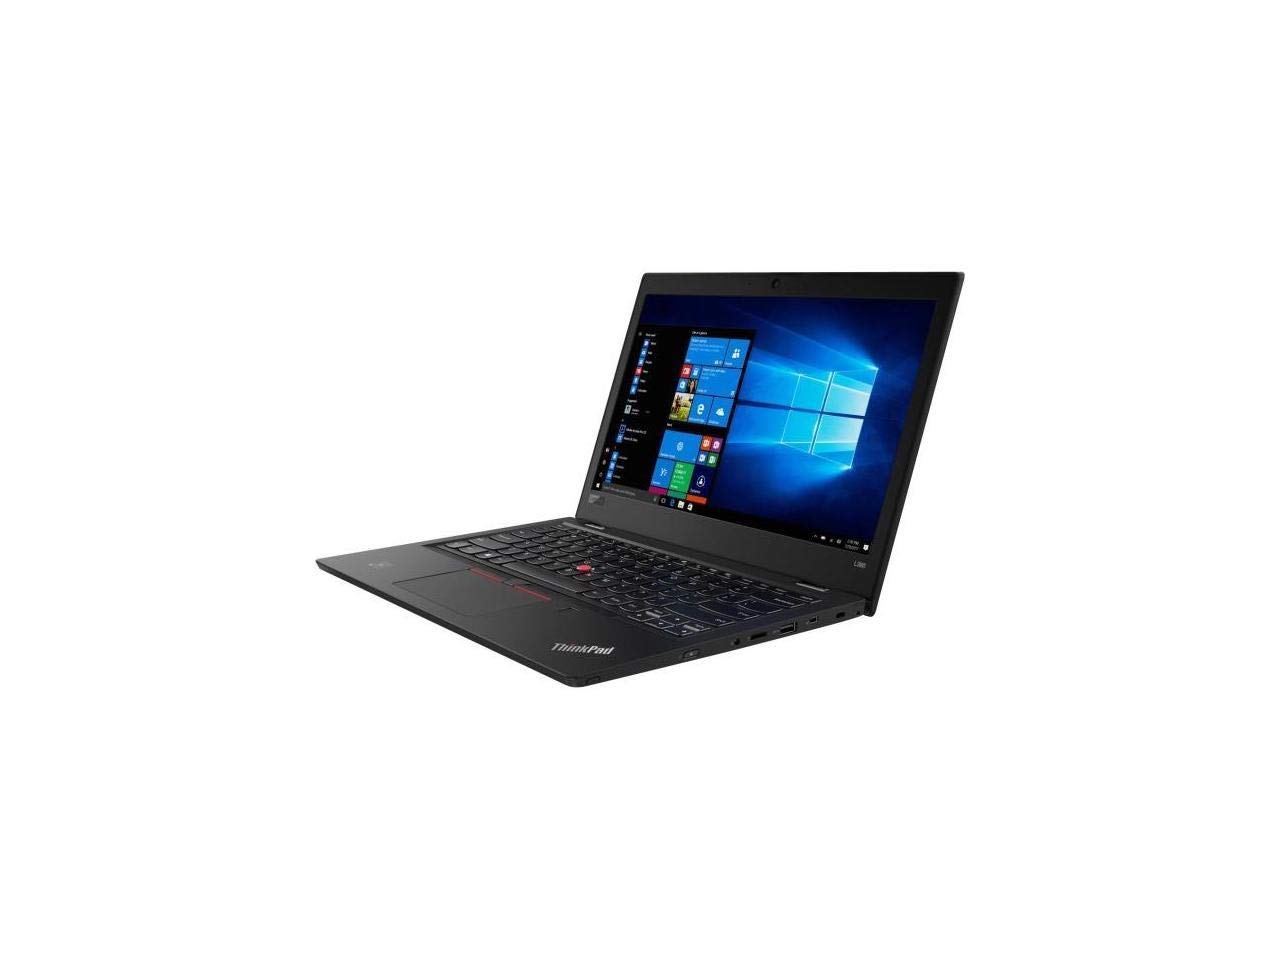 Lenovo ThinkPad L380 Yoga 7ma generación Intel Core i5-7200U 8 GB DDR4 512 GB Unidad de estado sólido 13.3 "FHD 1920 x 1080 IPS antirreflejo Multi-Touch.